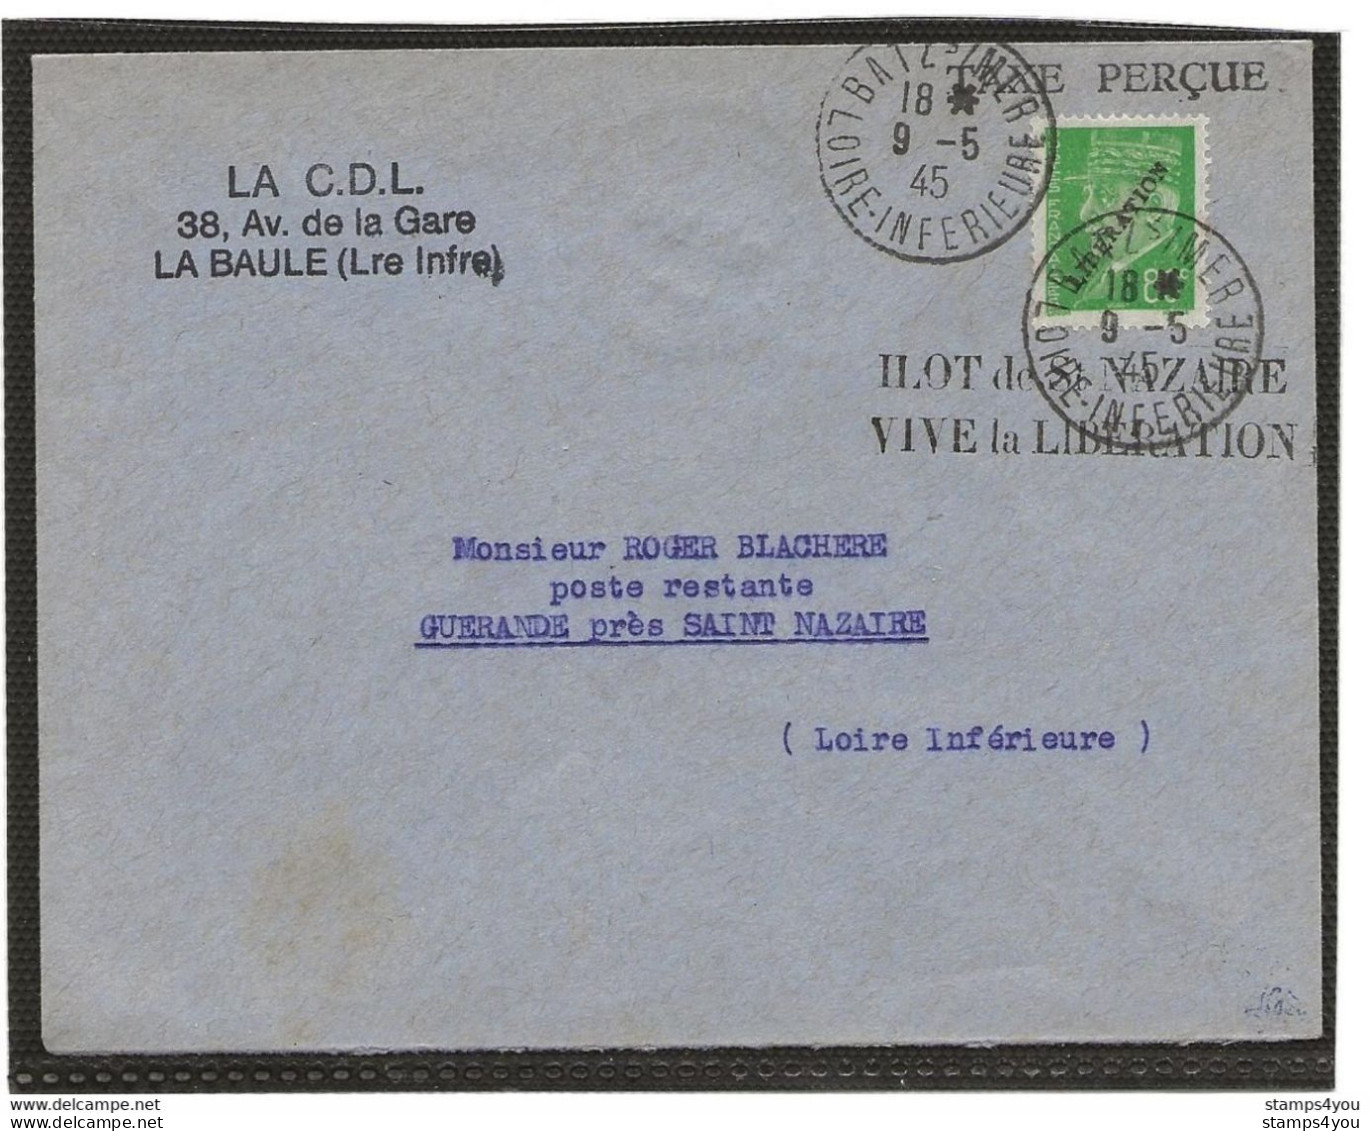 150 - 76 - Superbe Enveloppe Avec Timbre Libération - Ilot De St Nazaire Vive La Libération 19.5.1945 - Seconda Guerra Mondiale